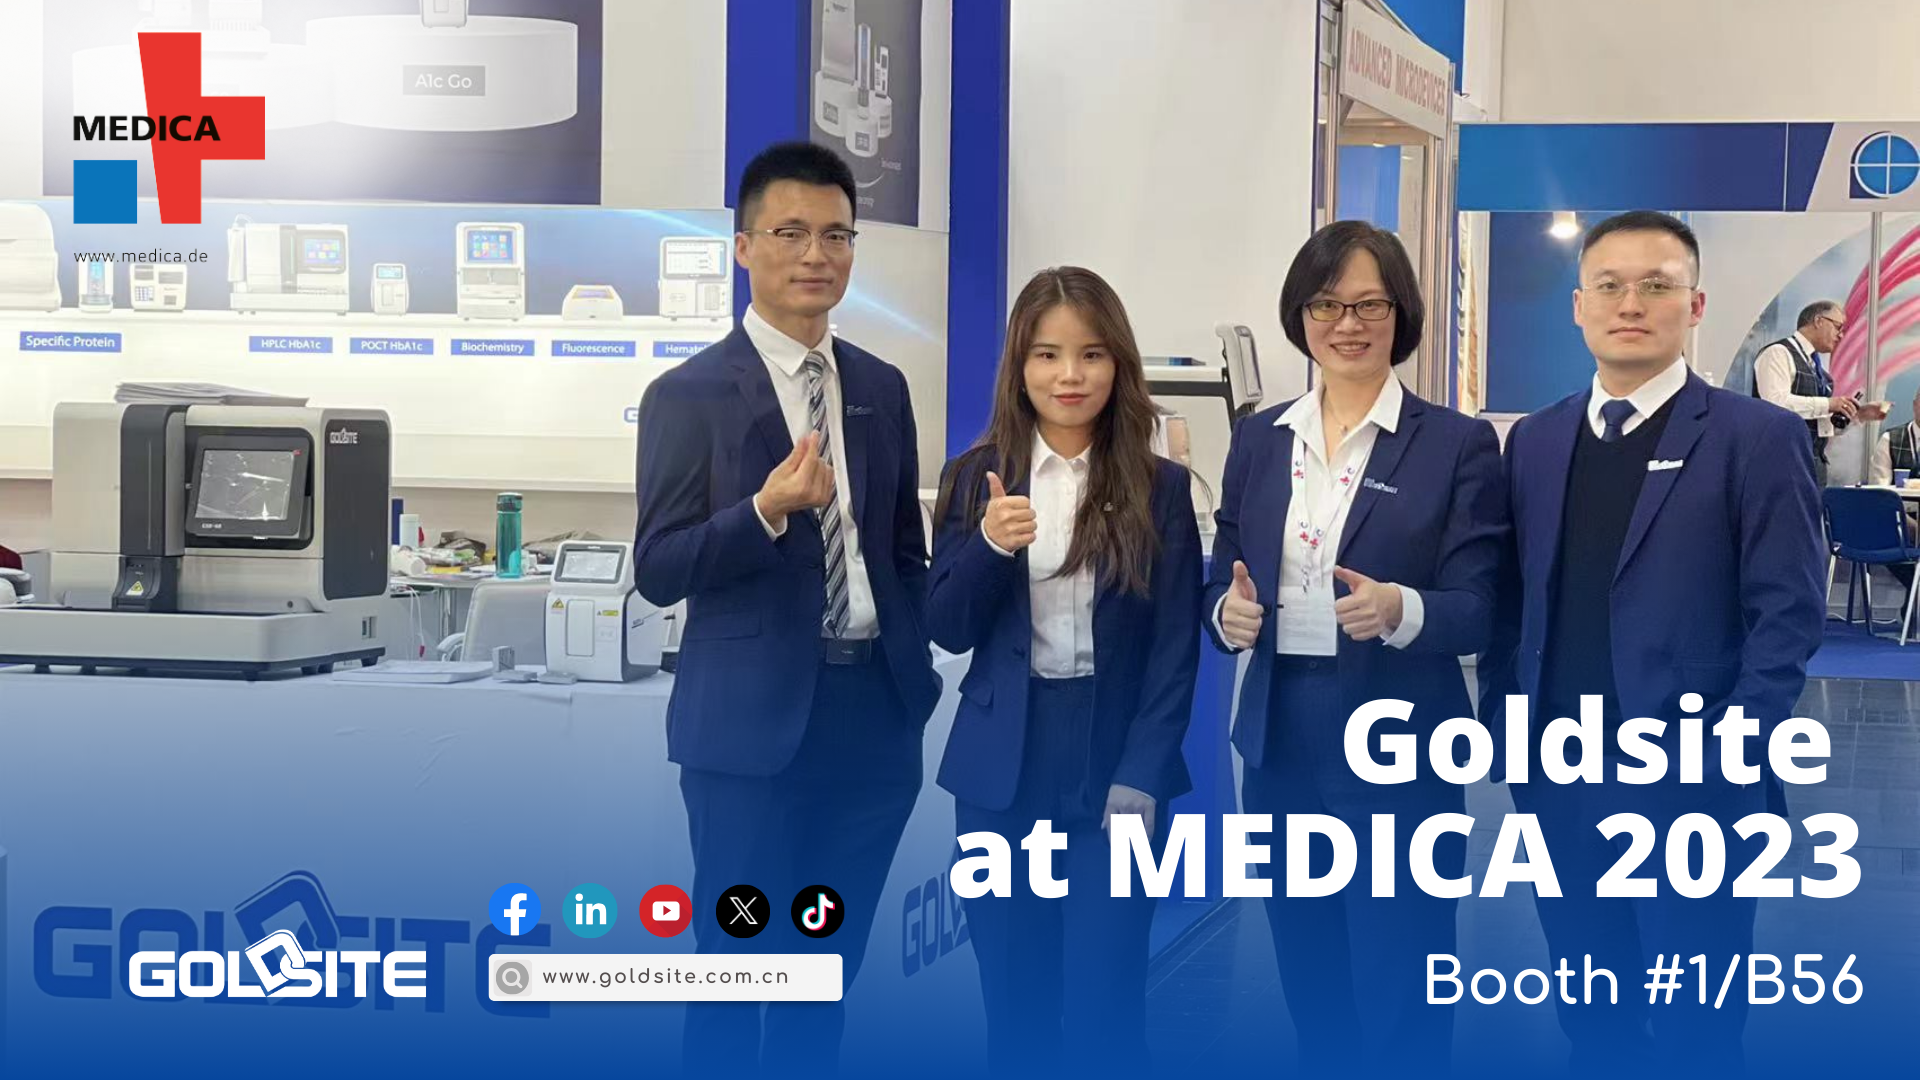 Goldsites Debüt bei Medica 2023